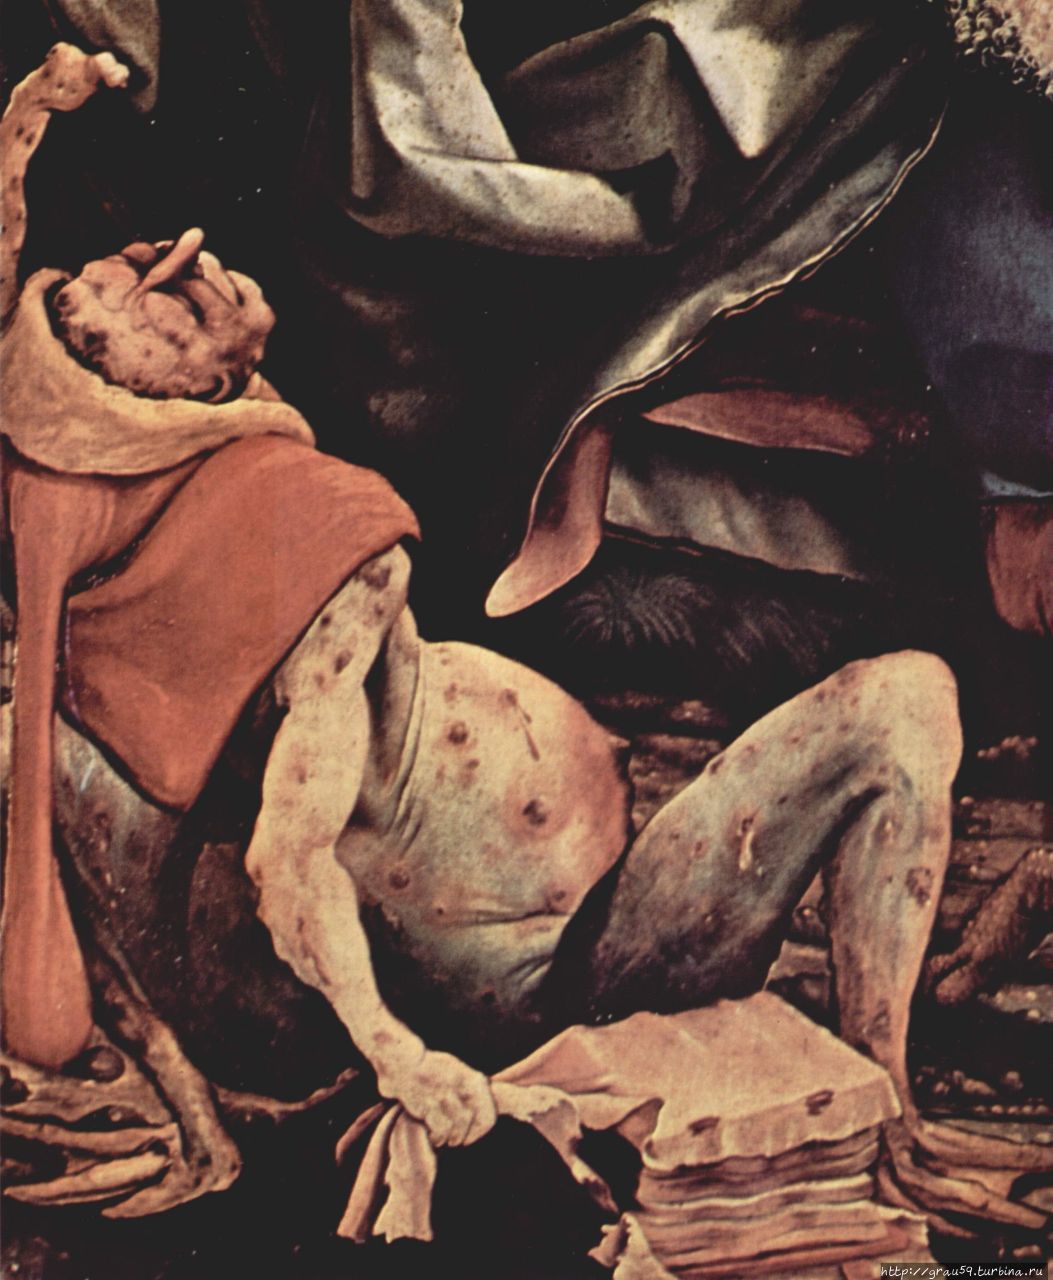 Картина Маттиаса Грюнвальда, с изображением пациента, страдающего тяжёлым эрготизмом. Начало XVI века. (из Интернета) Кёльн, Германия